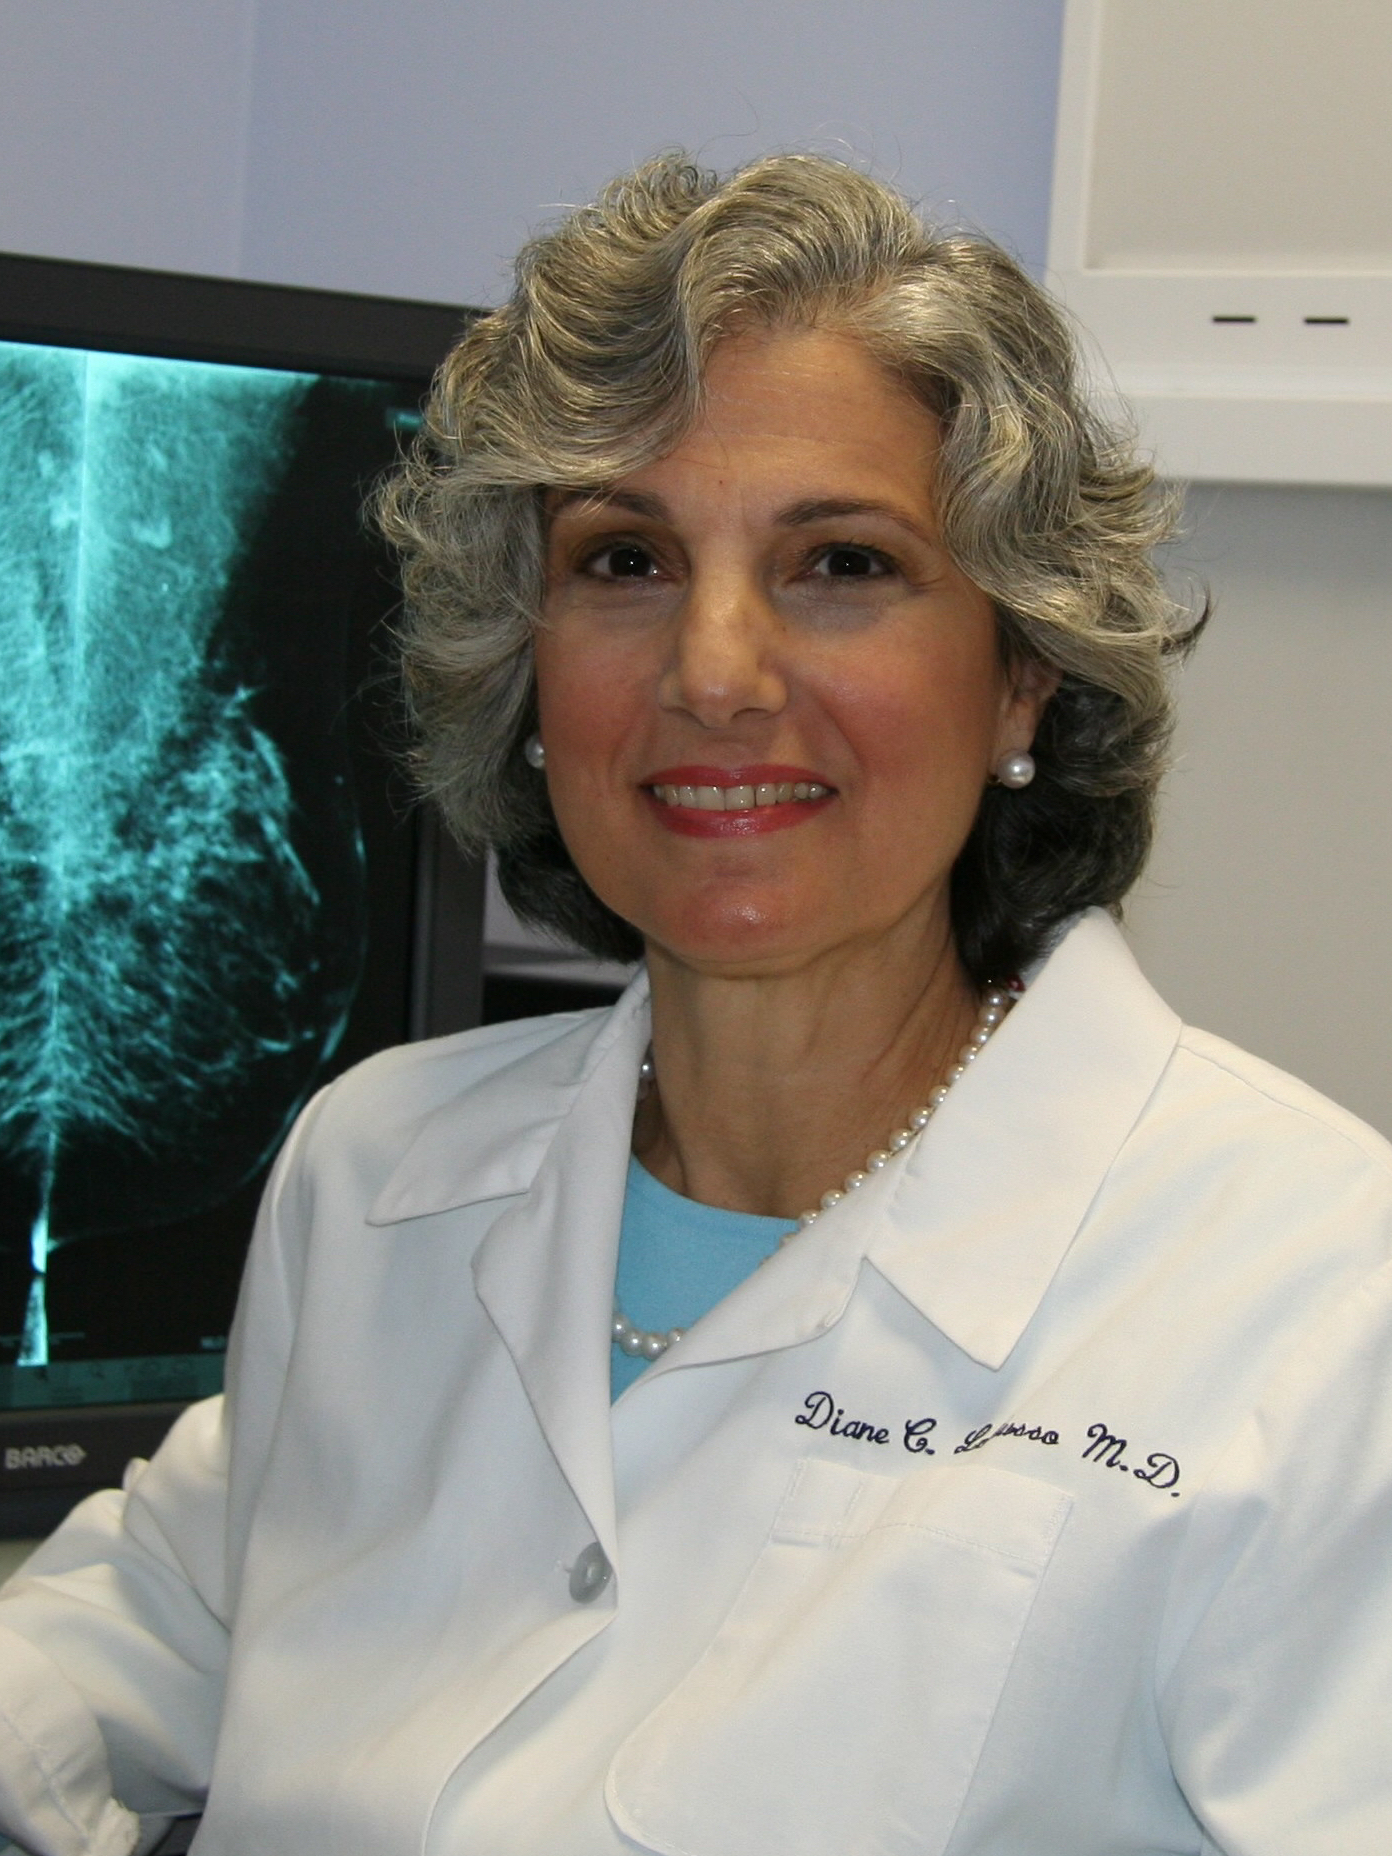 Dr. Diane LoRusso